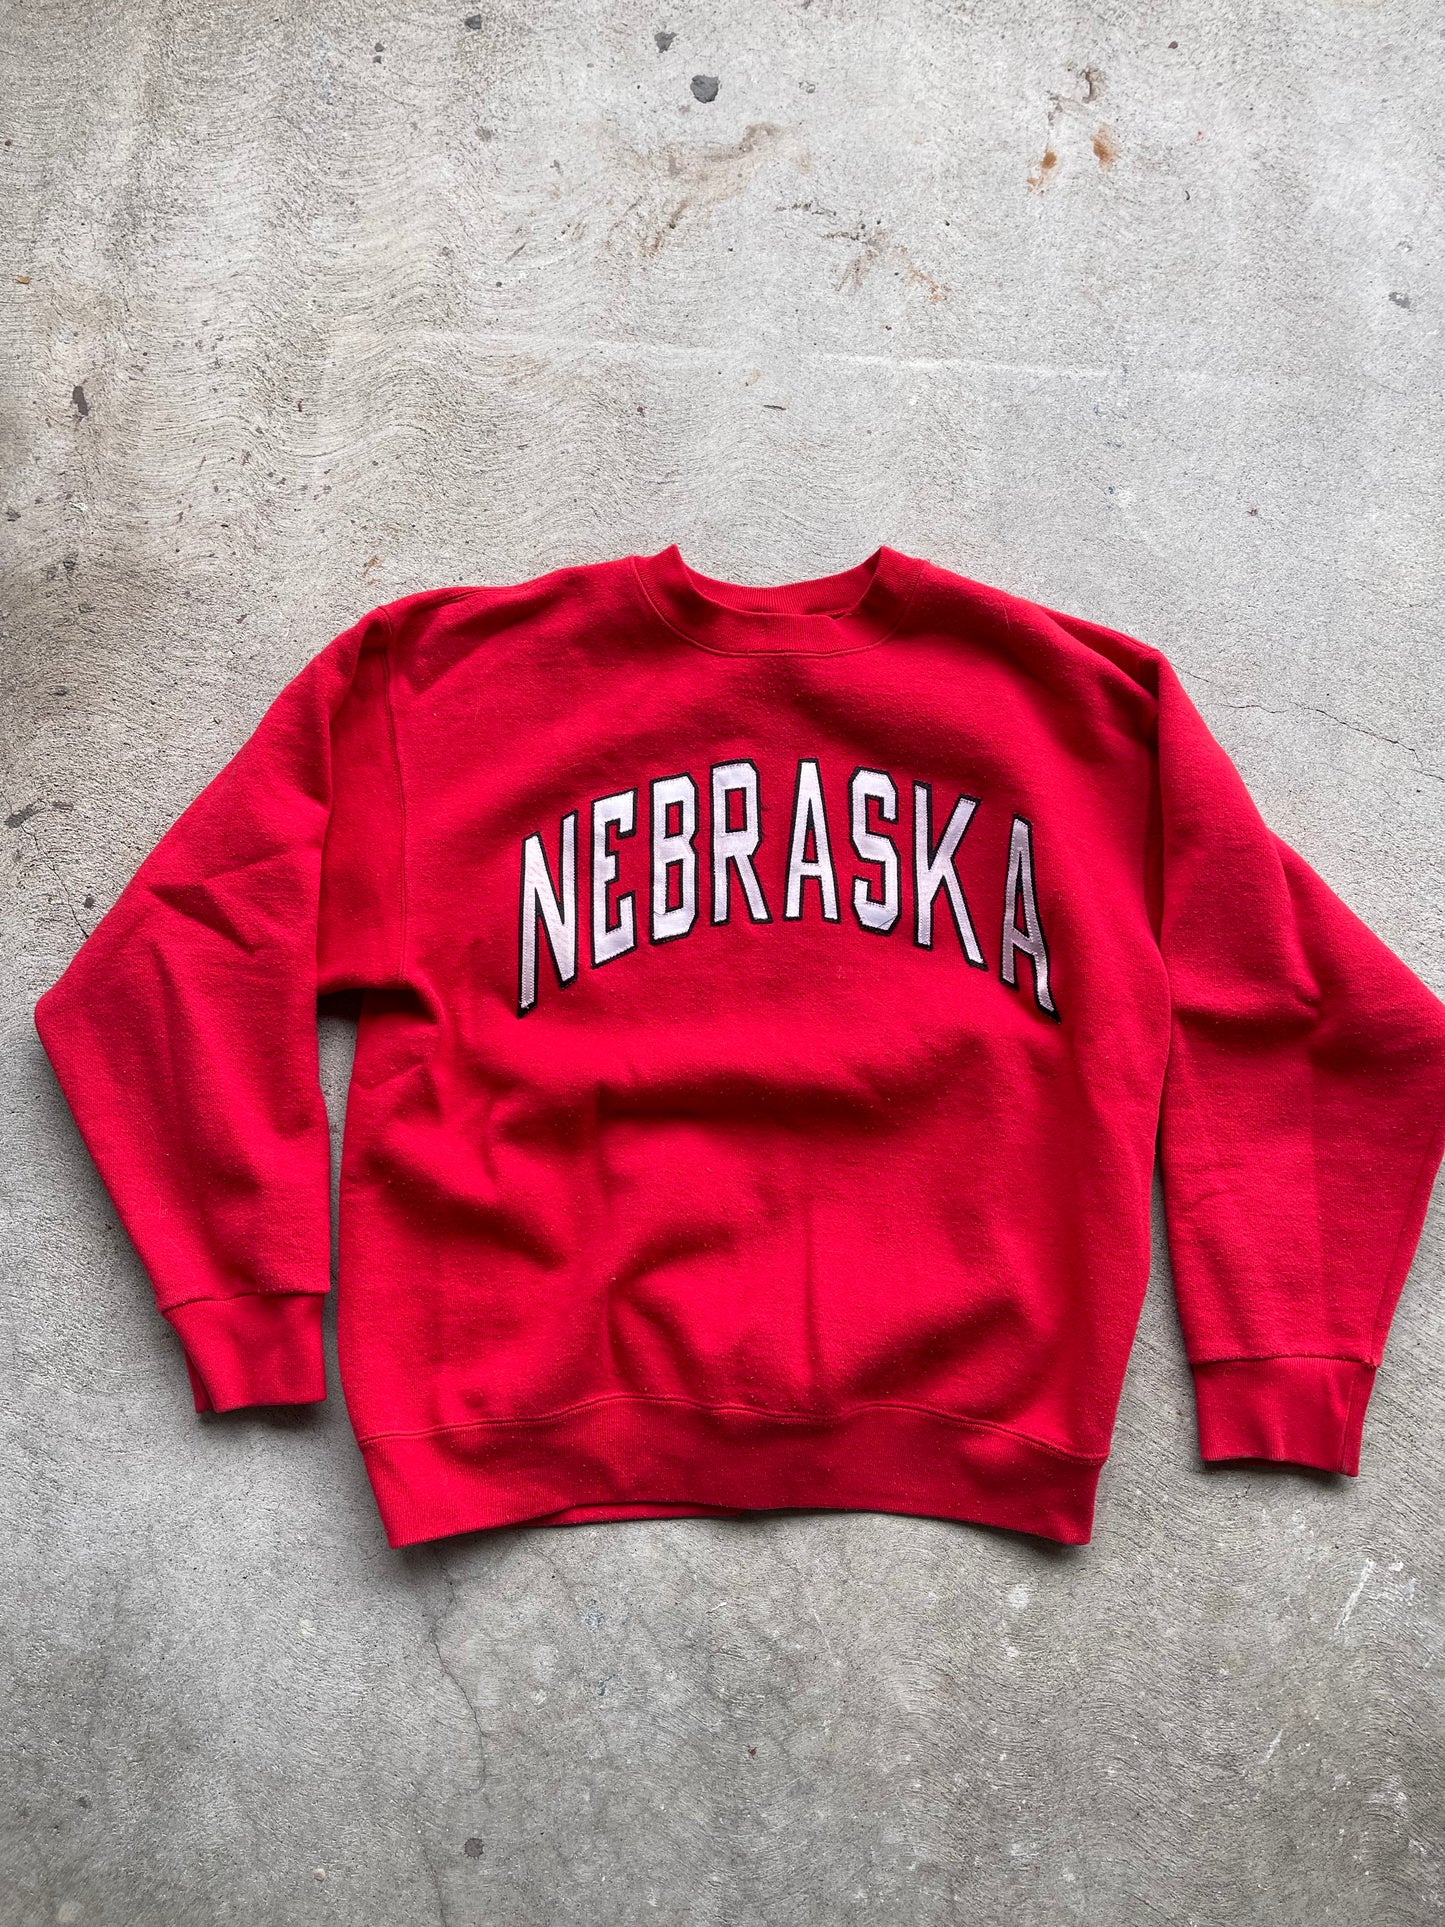 Vintage Nebraska Sweatshirt - L